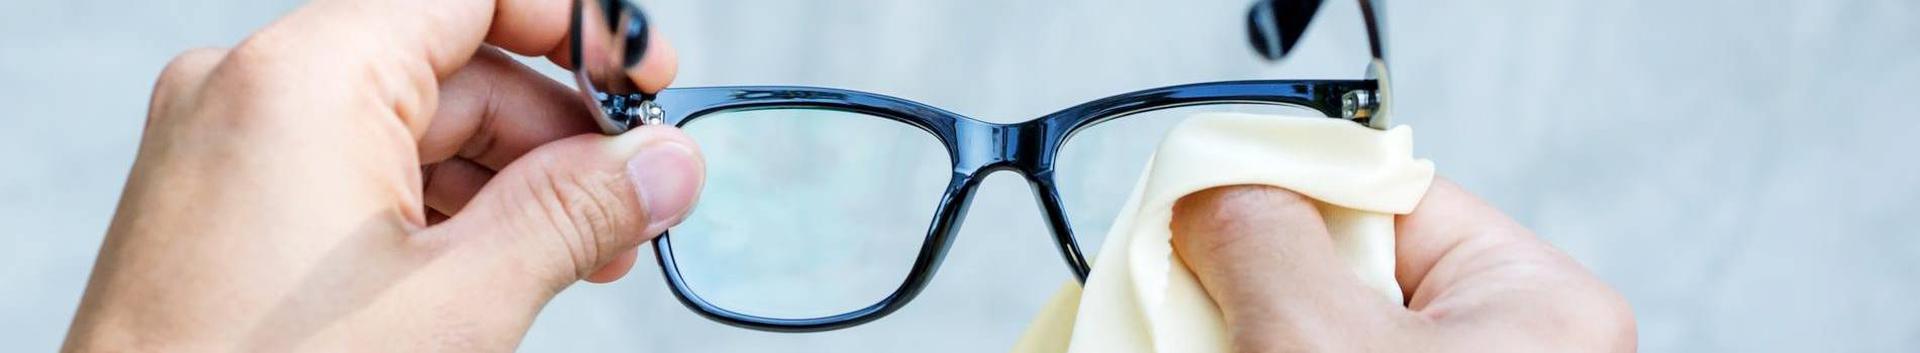 Smartvision Estonia OÜ põhitegevuseks on prilliraamide ja tarvikute müük Eesti turul. 2023. aastal jätkab ettevõte optikakaubandusega ja prognoositud käi...